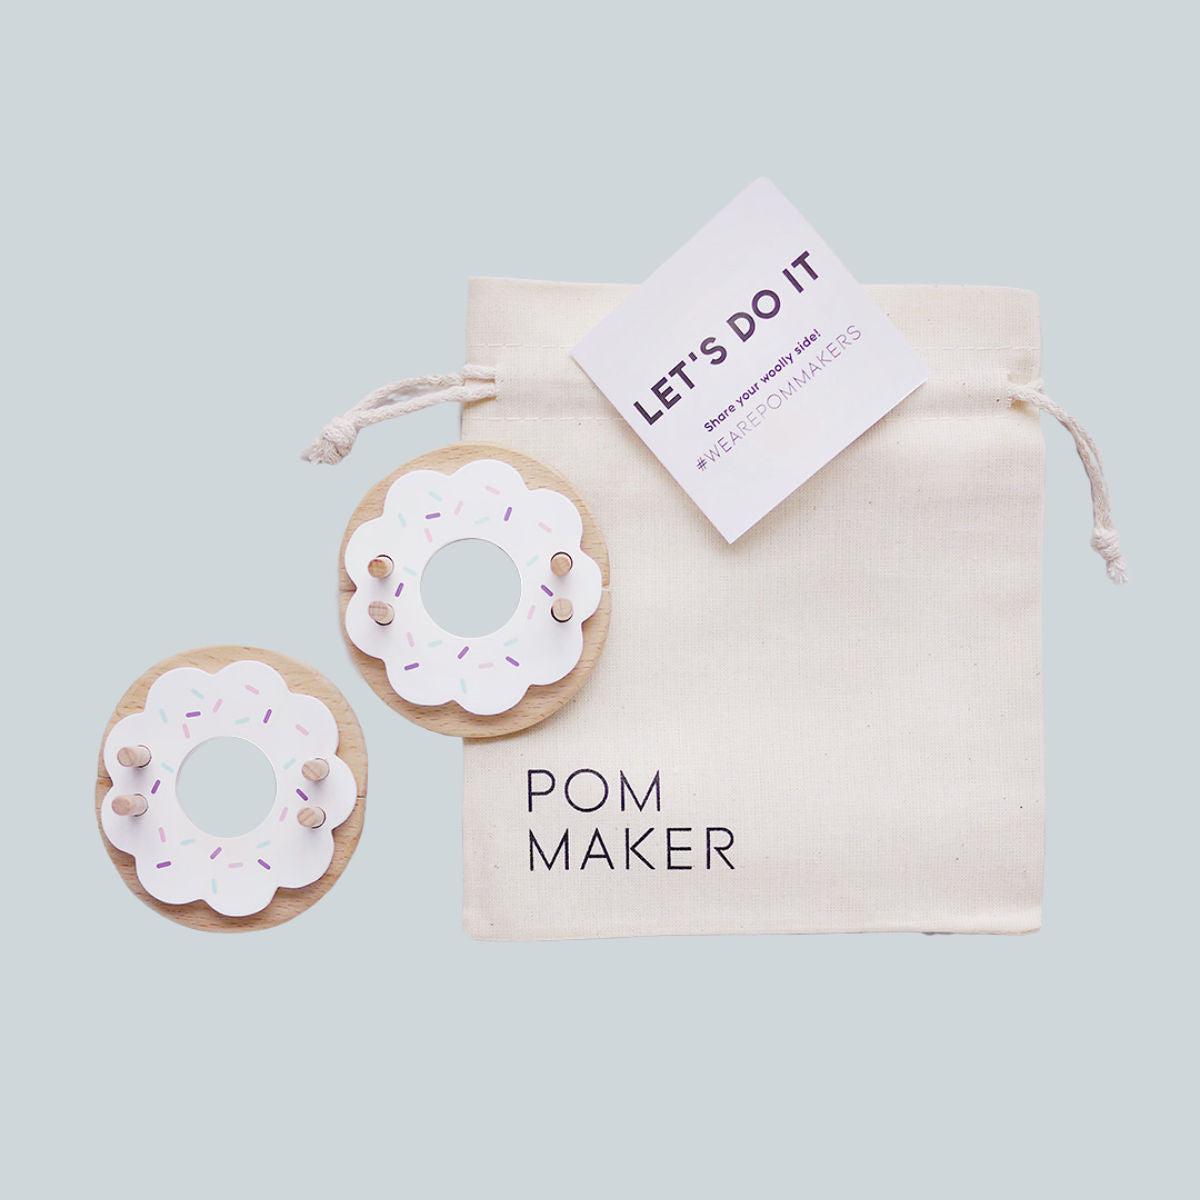 Pom maker eco wooden donut pom pom maker children's crafting at blue brontide UK